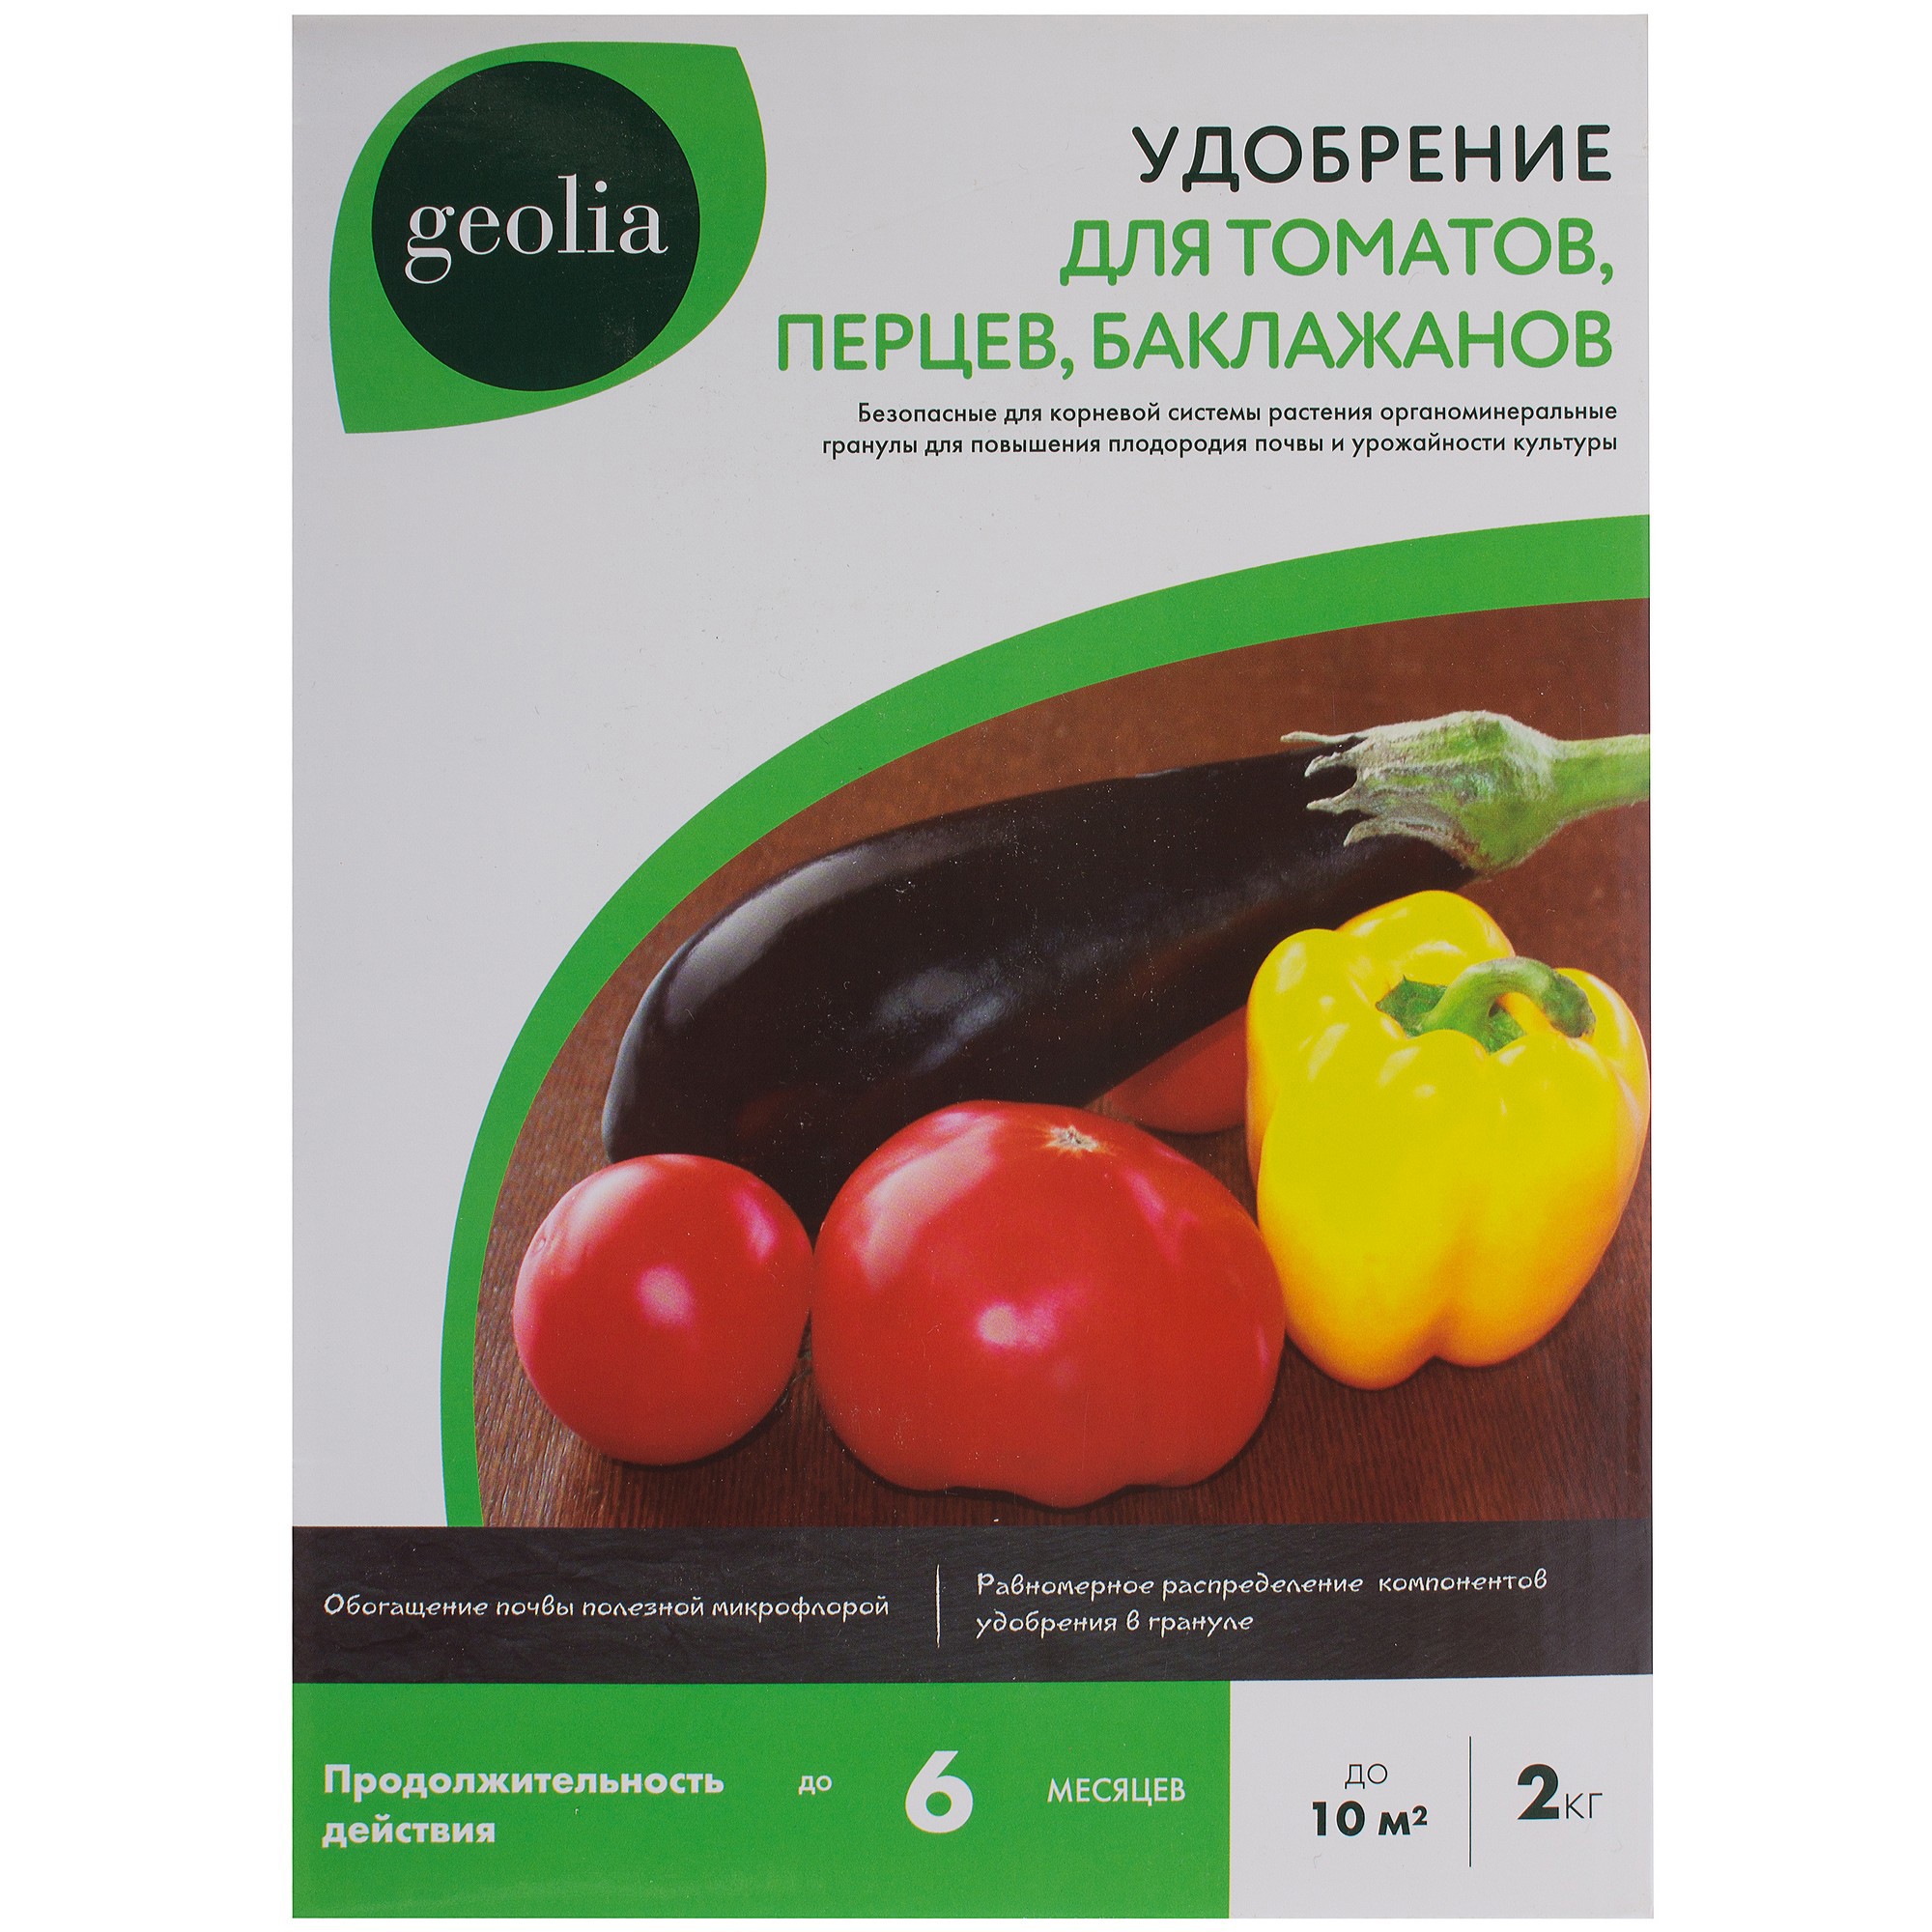 Удобрение Geolia органоминеральное для томатов 2 кг в Москве – купить понизкой цене в интернет-магазине Леруа Мерлен